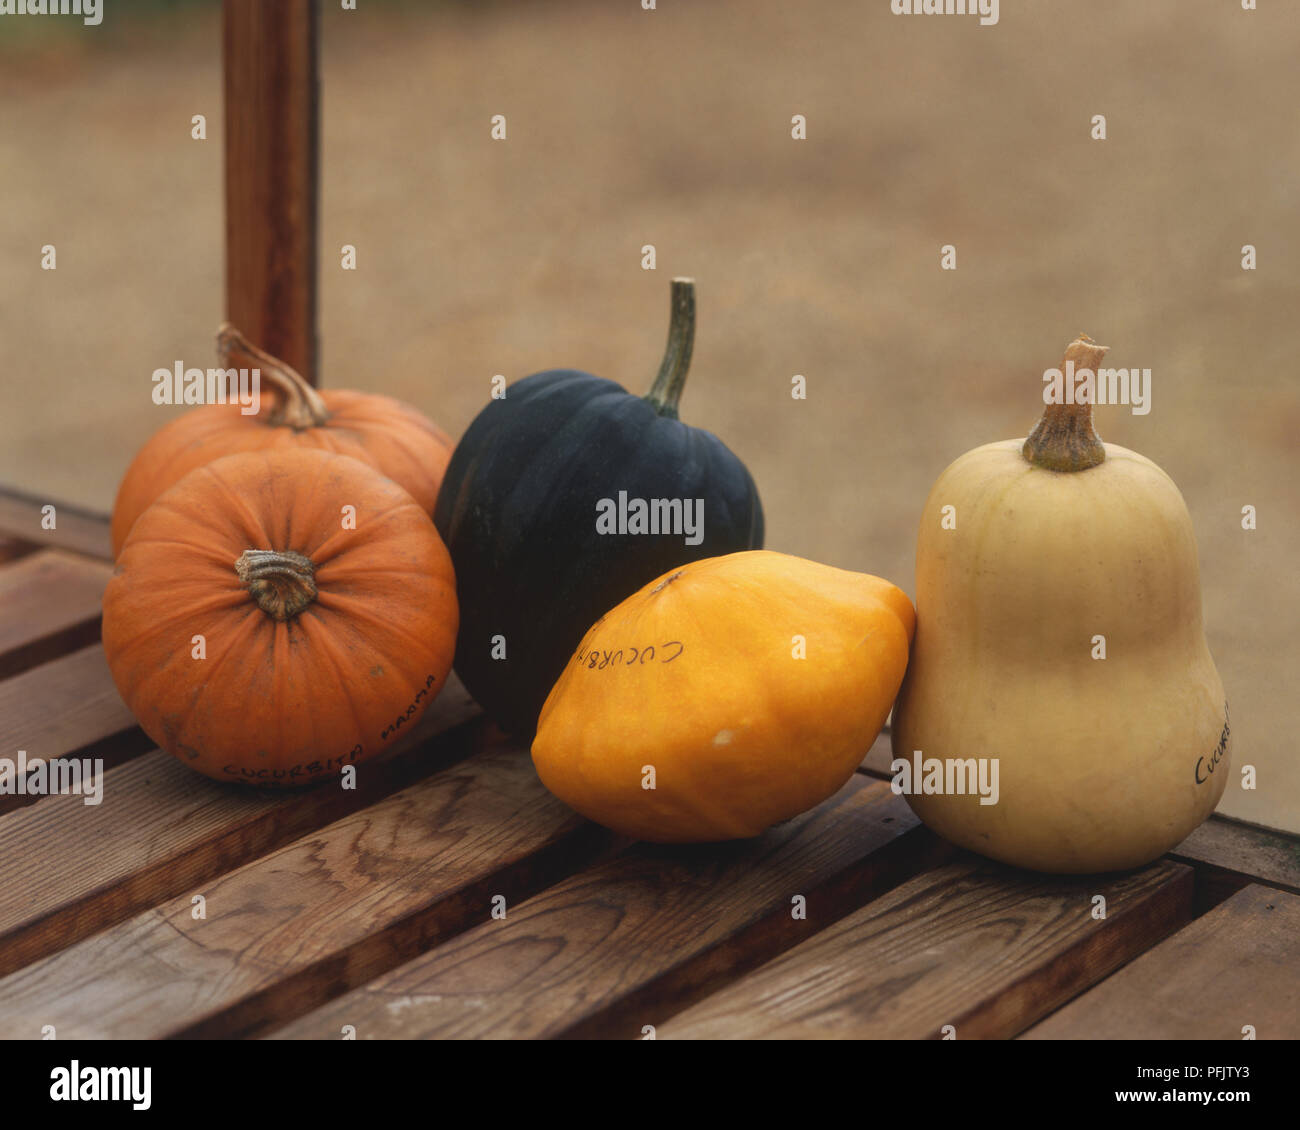 Cucurbita, selection of Pumpkins Stock Photo